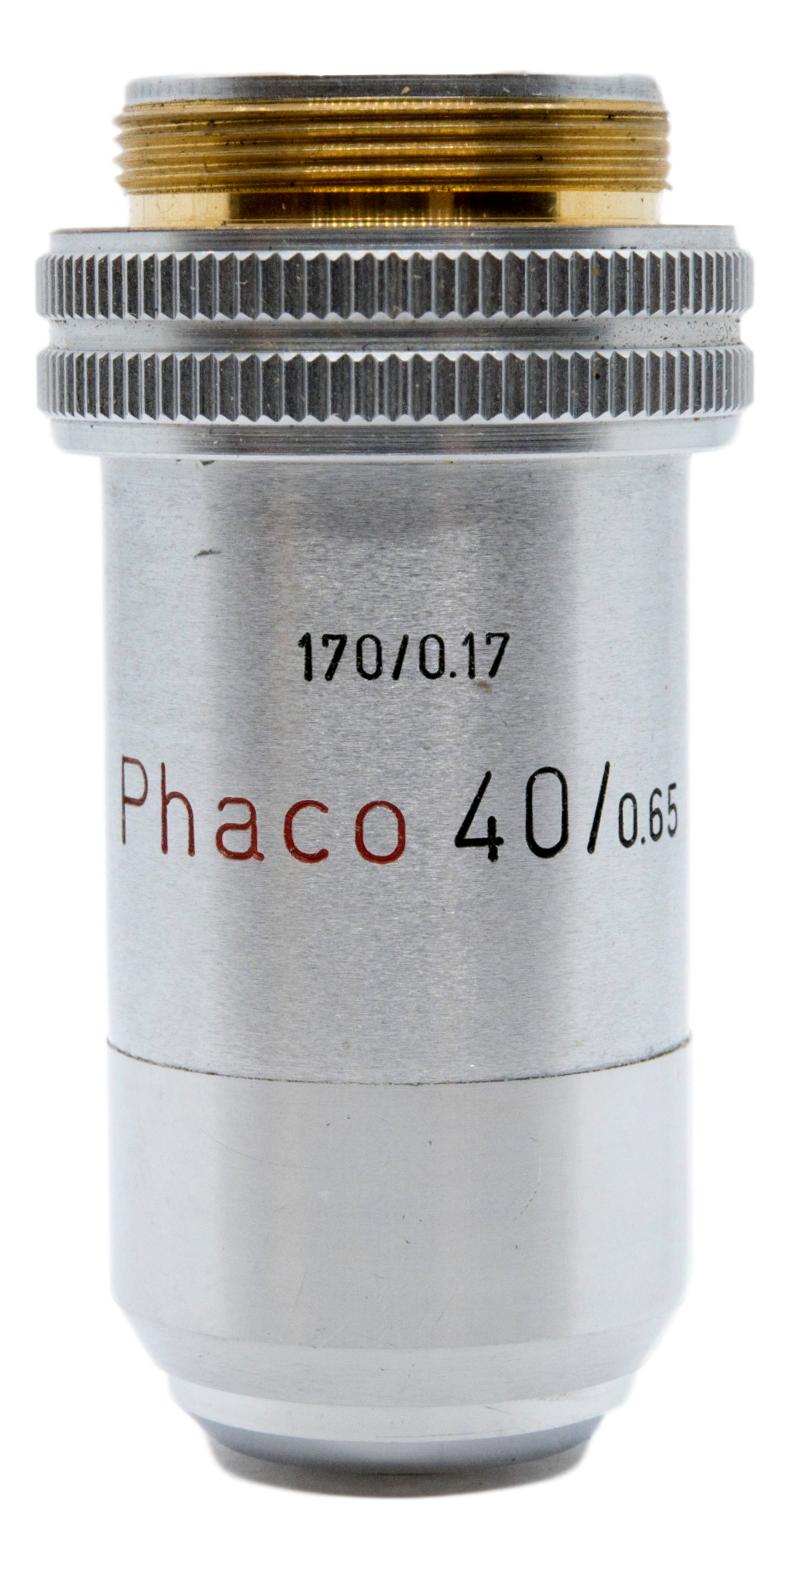 Leitz Phaco / Phase 40x Objective